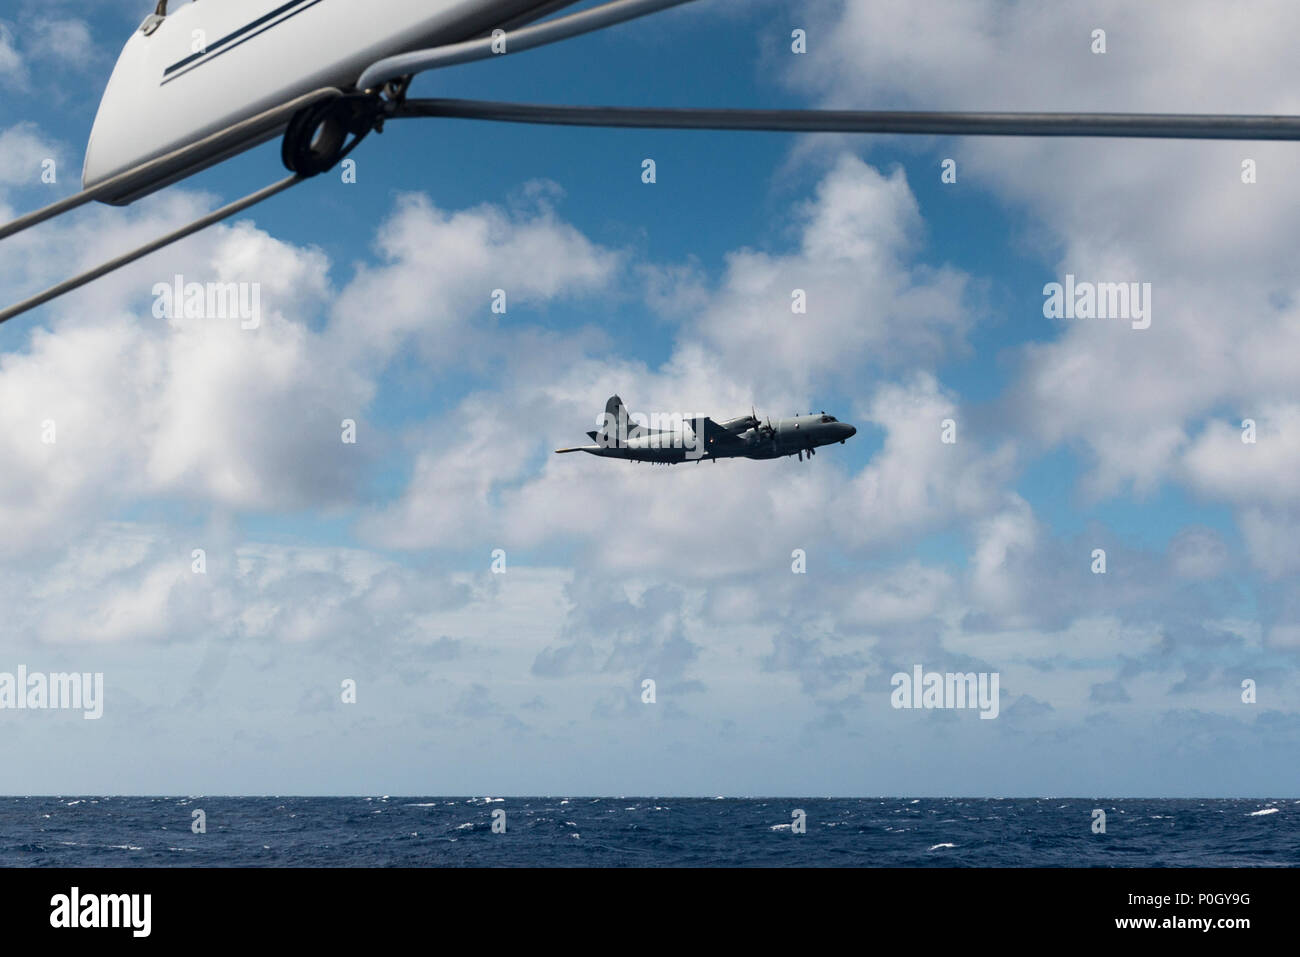 Ein kanadischer Flugzeug auf einem Übungsflug fliegen auf niedrigem Niveau neben einer Yacht segeln Offshore im Nordatlantik. Stockfoto